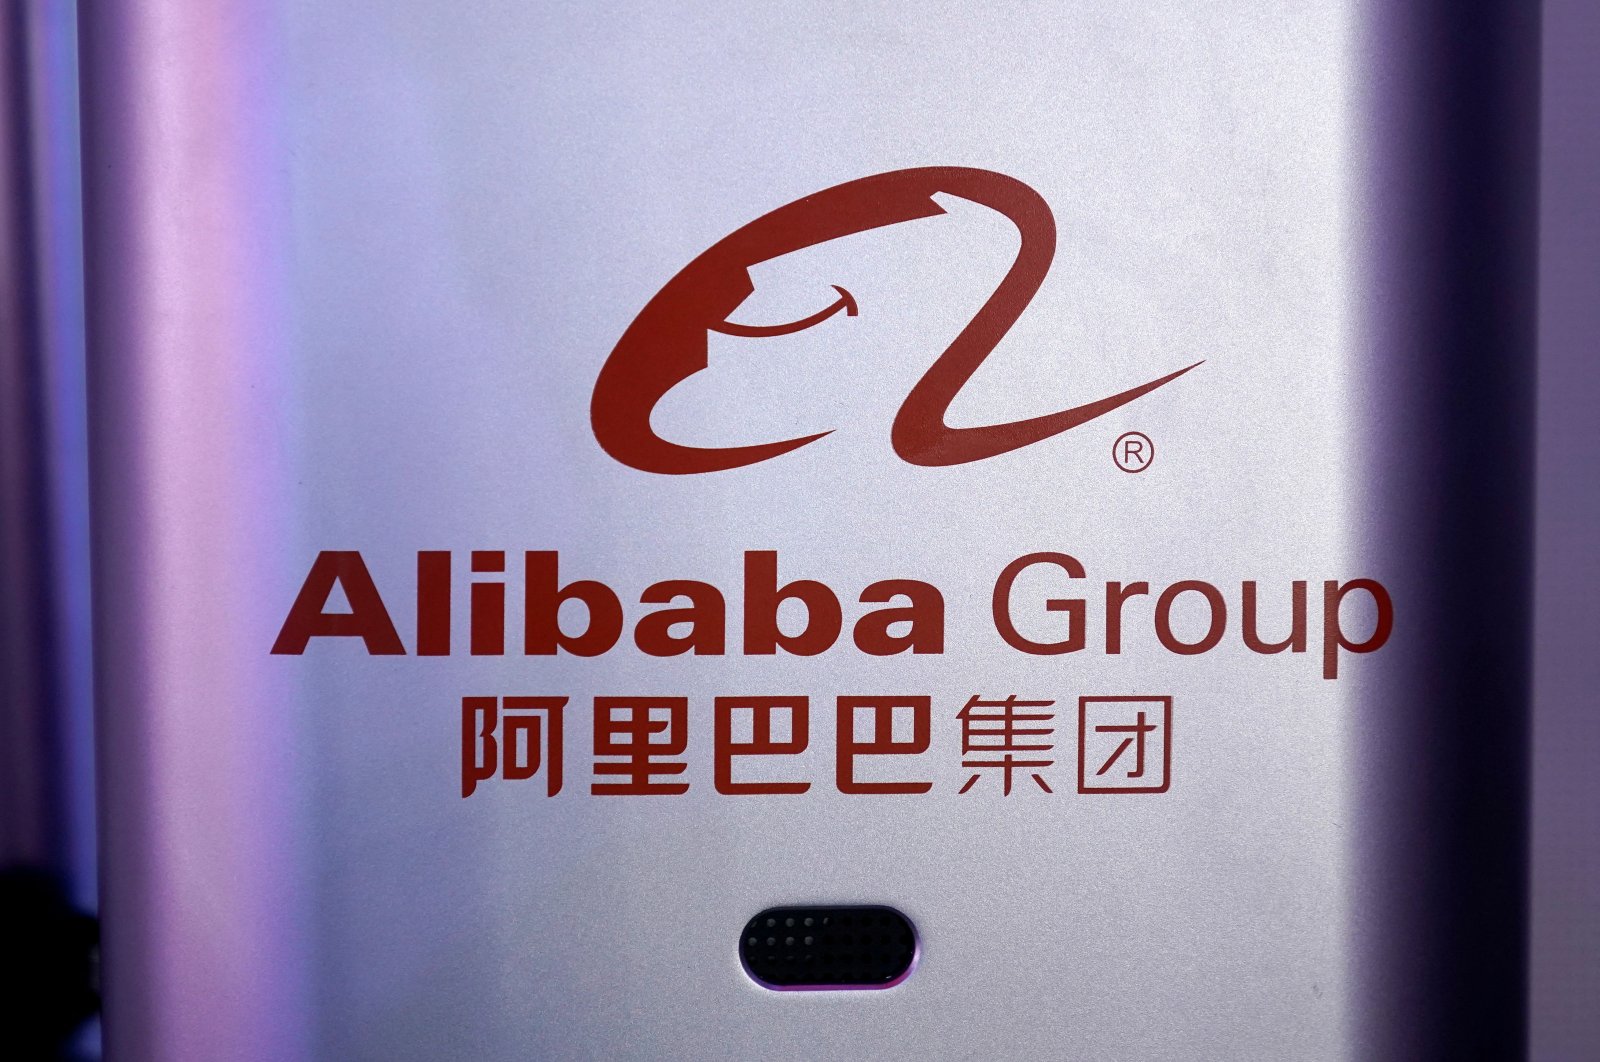 SoftBank akan menjual hampir semua saham Alibaba: Laporkan